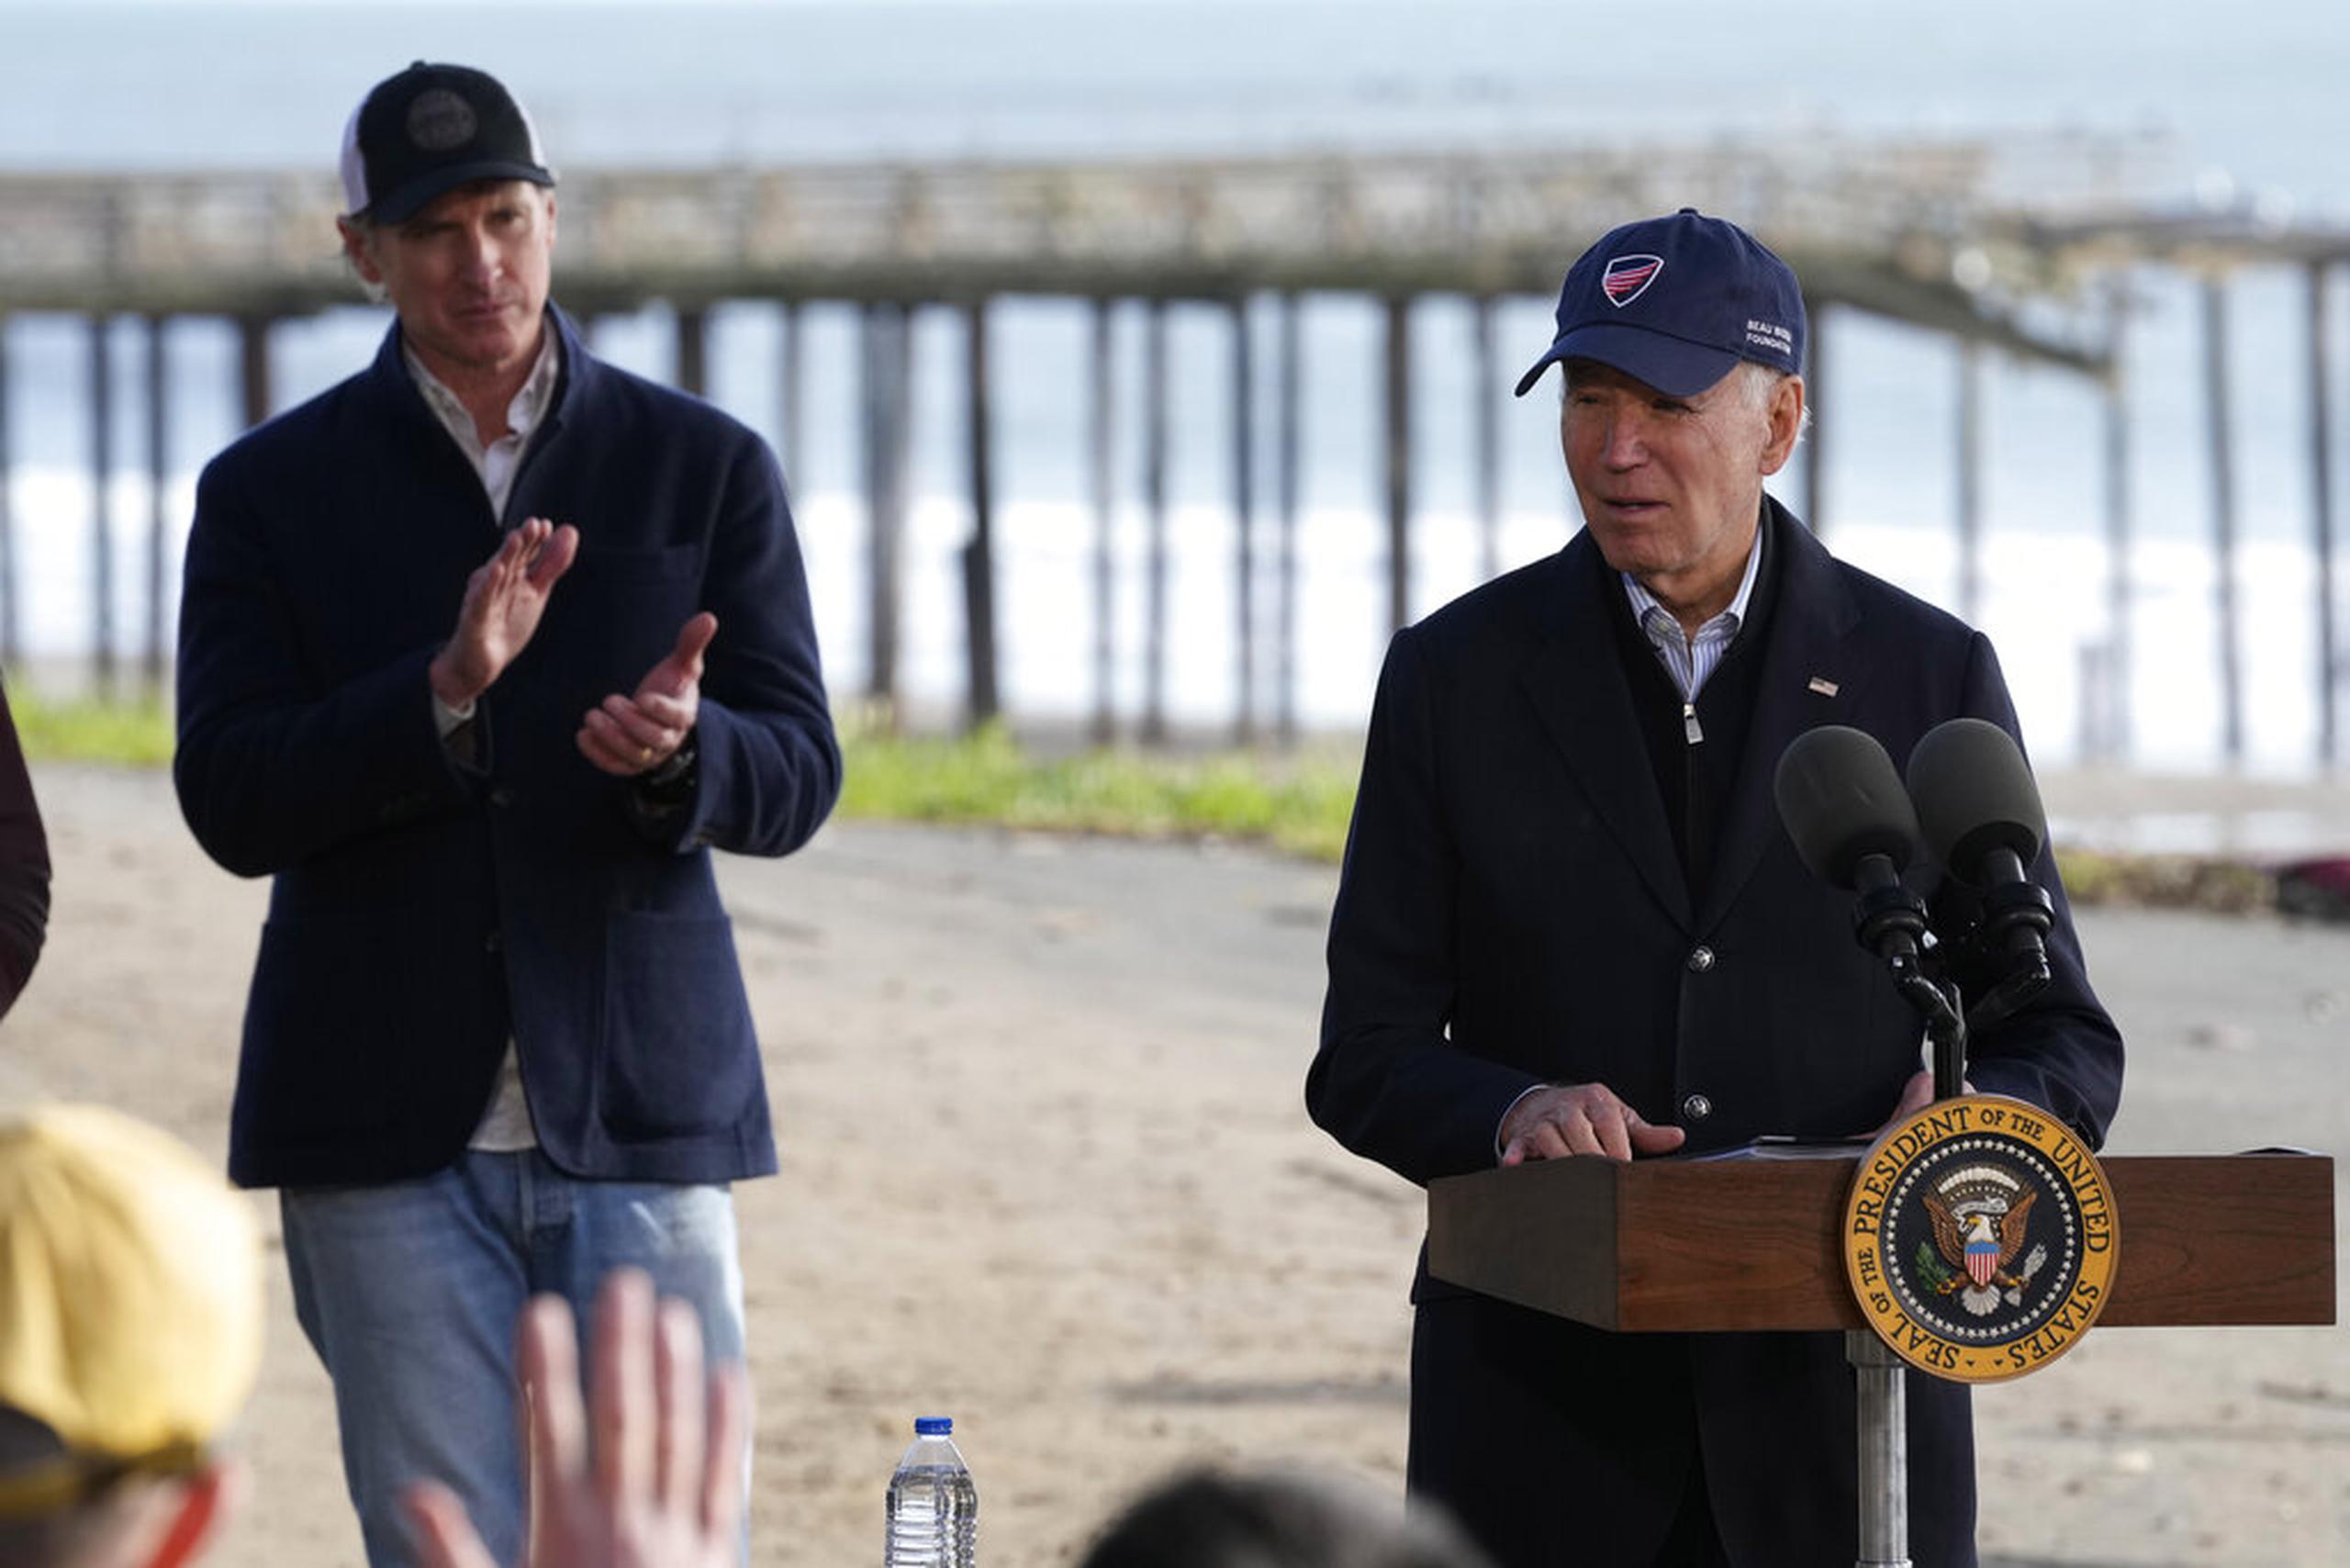 El presidente Joe Biden habla mientras el gobernador de California, Gavin Newsom, lo escucha en el Parque Estatal Seacliff en Aptos, California, el 19 de enero de 2023.